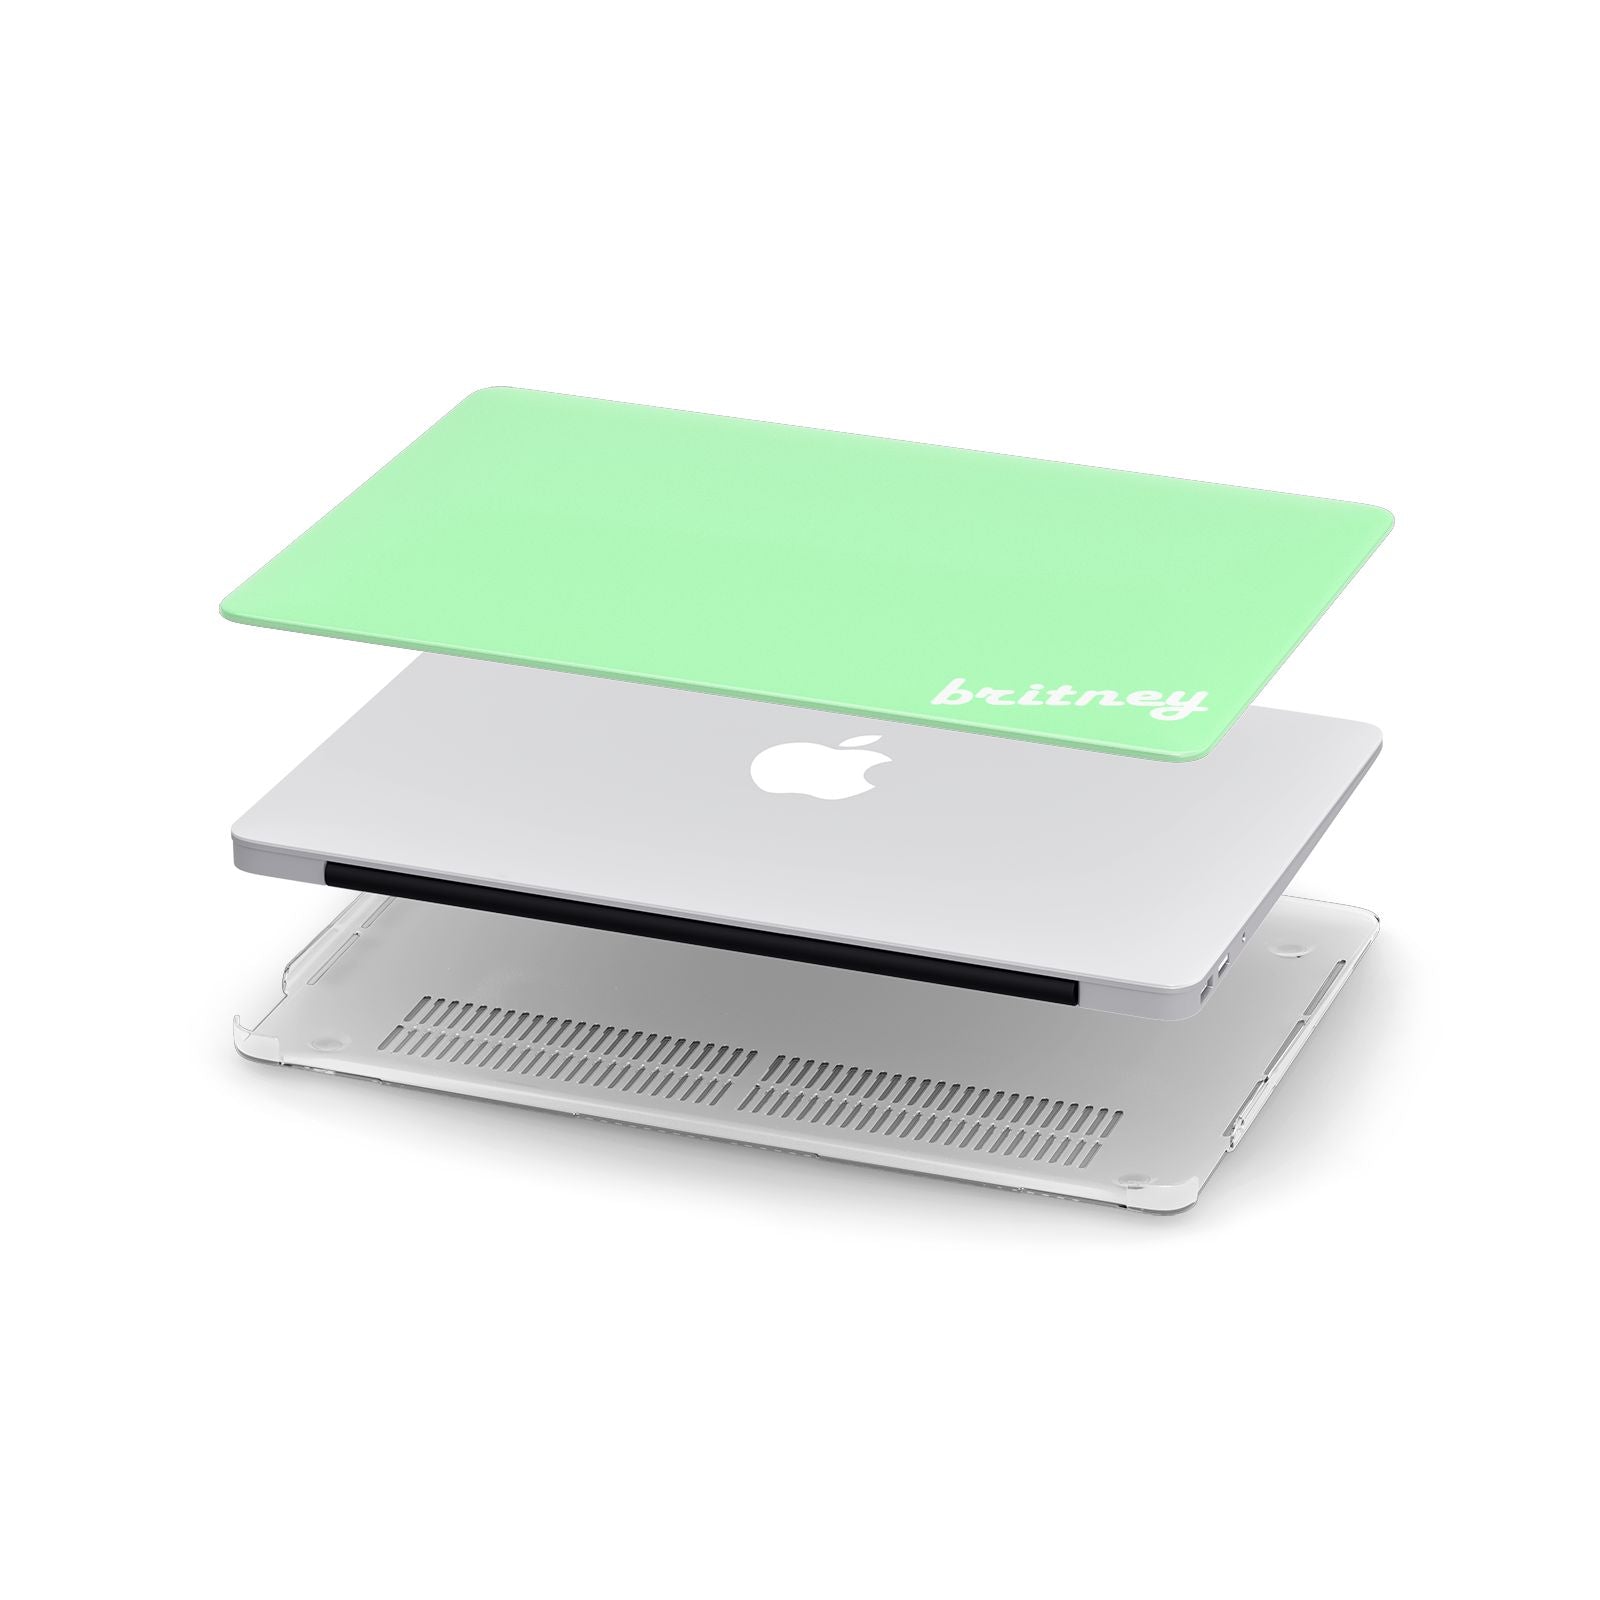 Personalised Green Name Apple MacBook Case in Detail